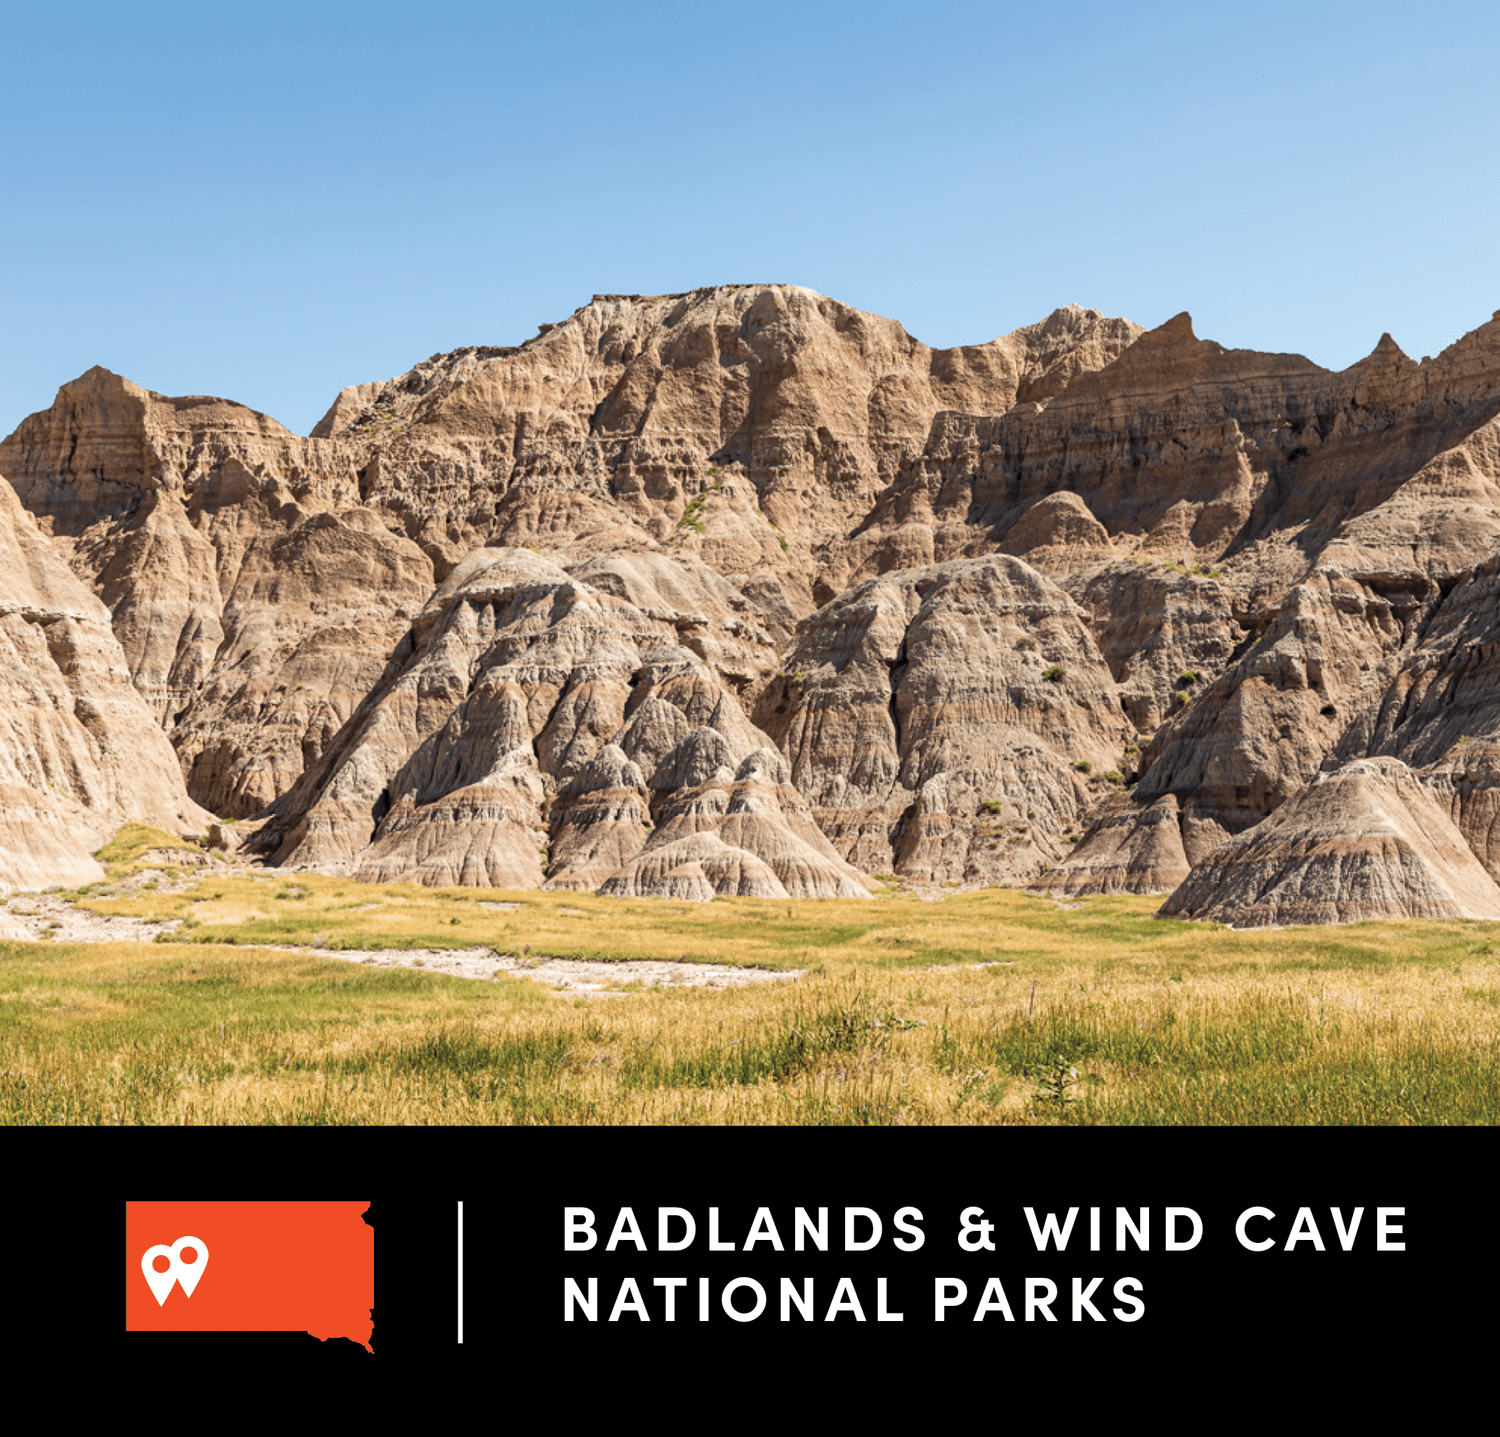 Badlands and Wind Cave National Parks